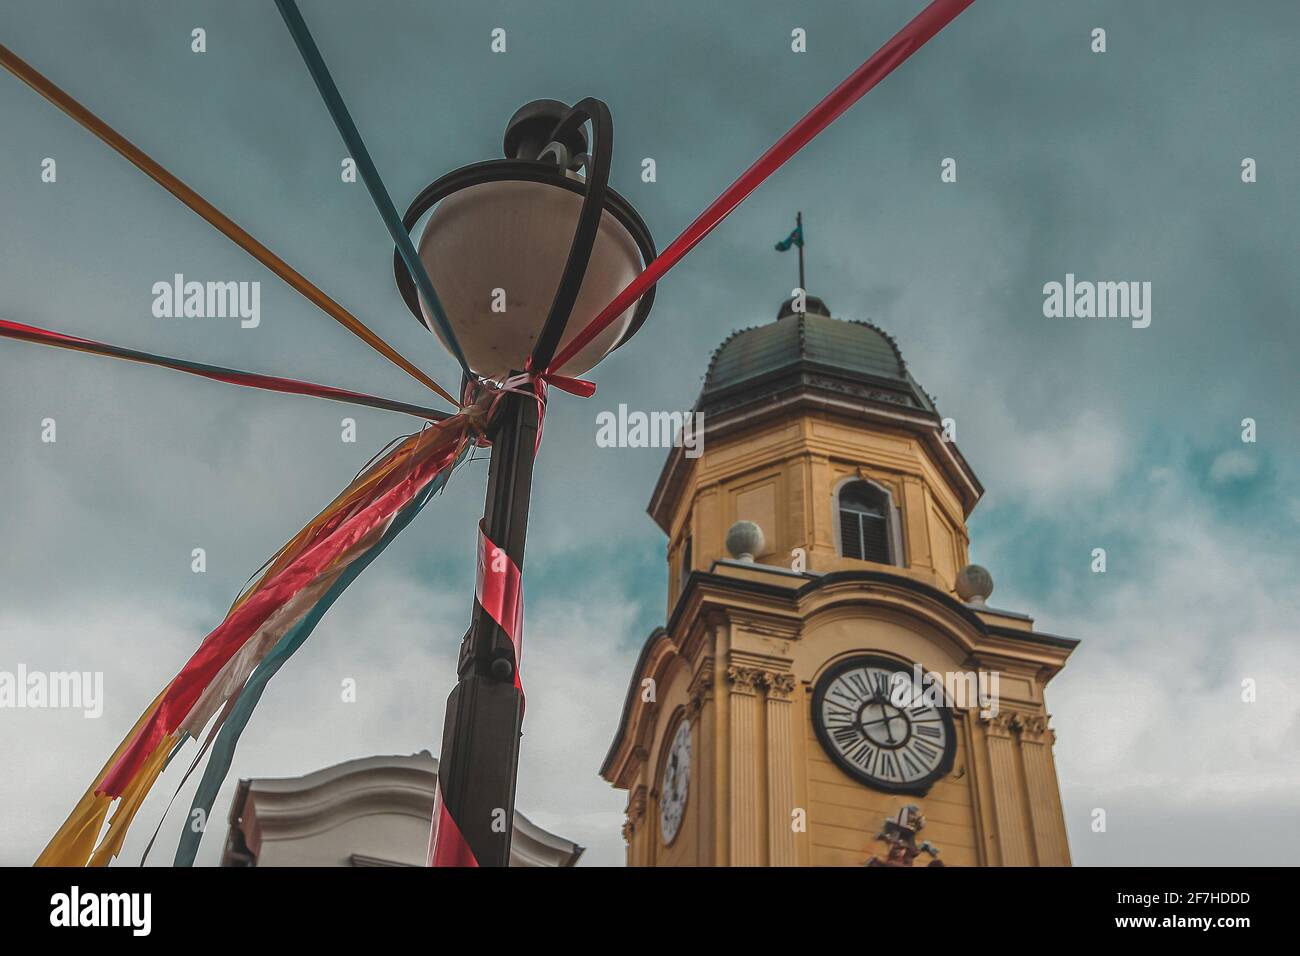 Città di Rijeka, torre dell'orologio della Croazia, in uno spirito di festa. La Lanterna che si trova accanto alla chiesa è coperta da ornamenti colorati. Foto Stock